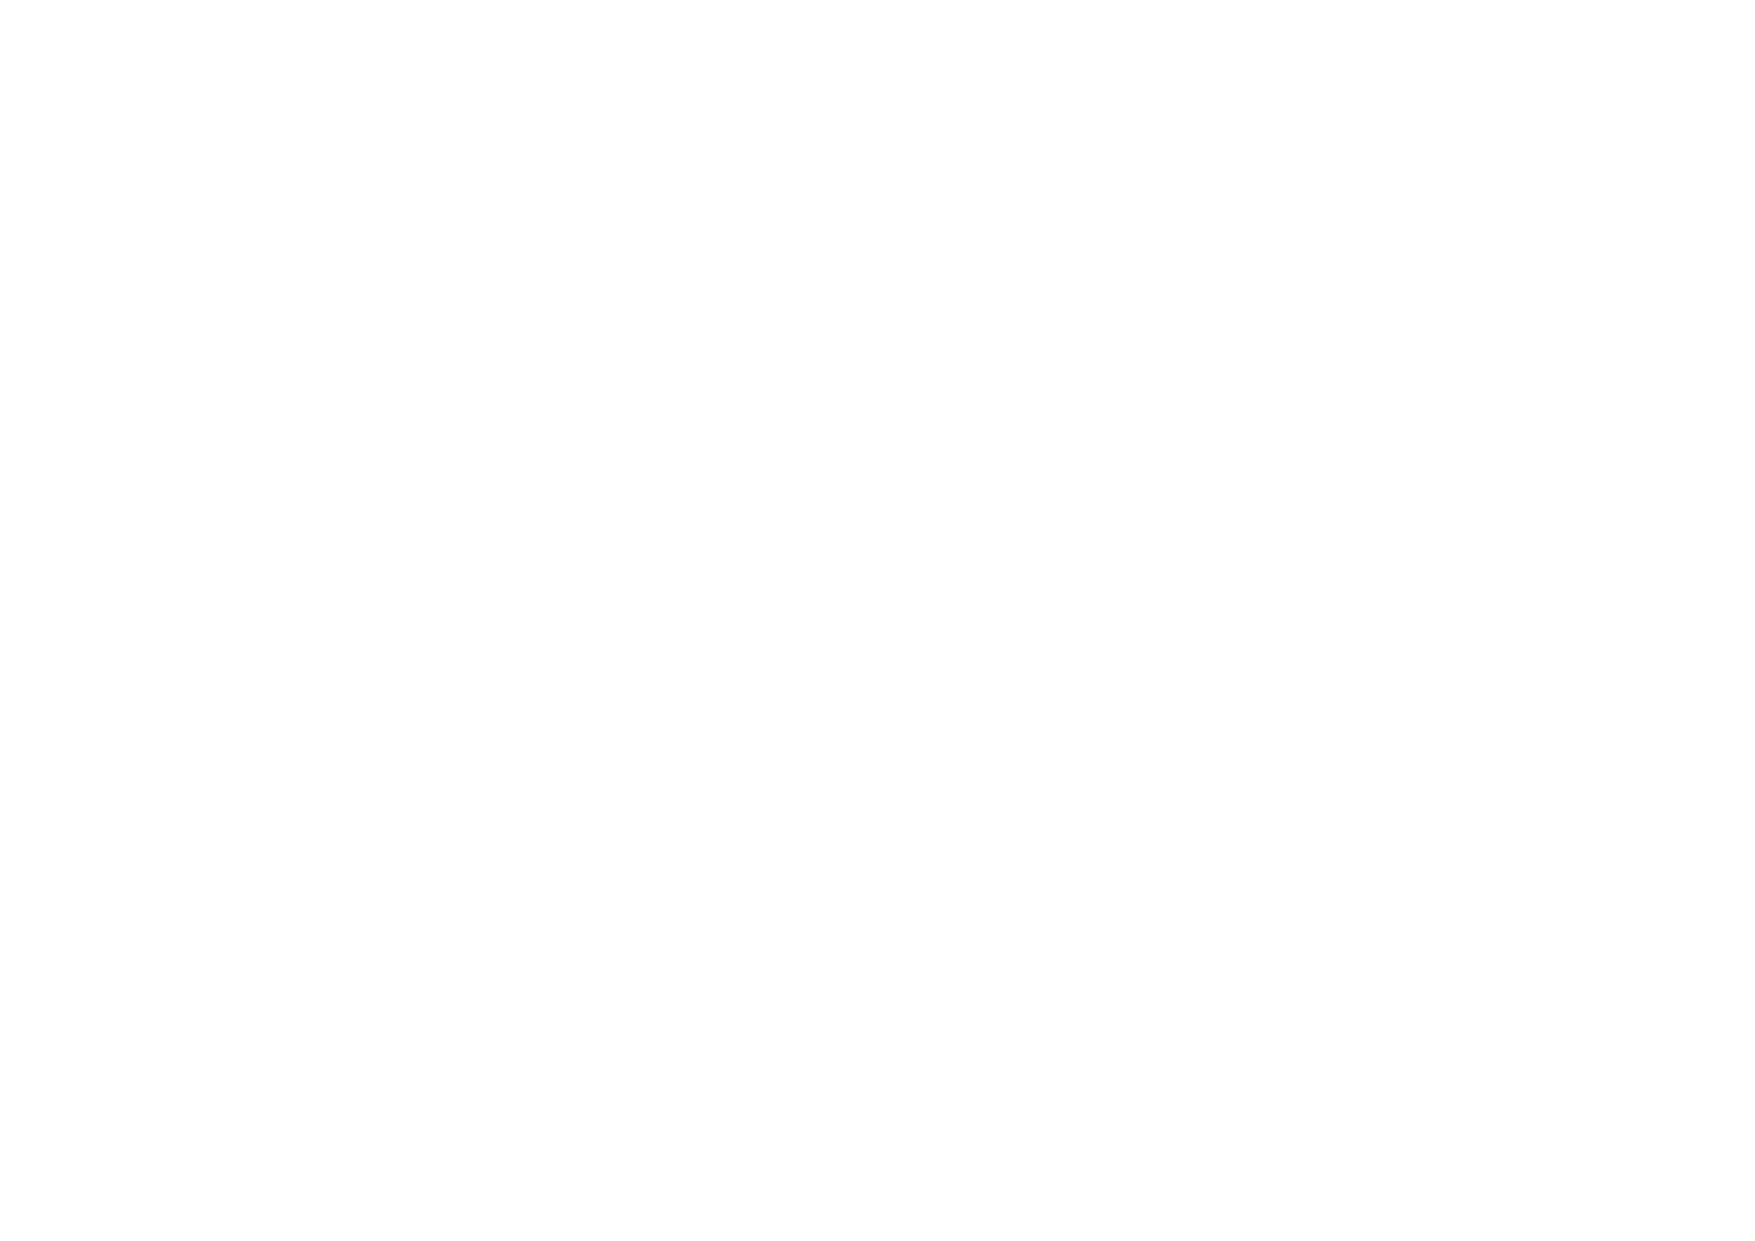 Tosco Bosco